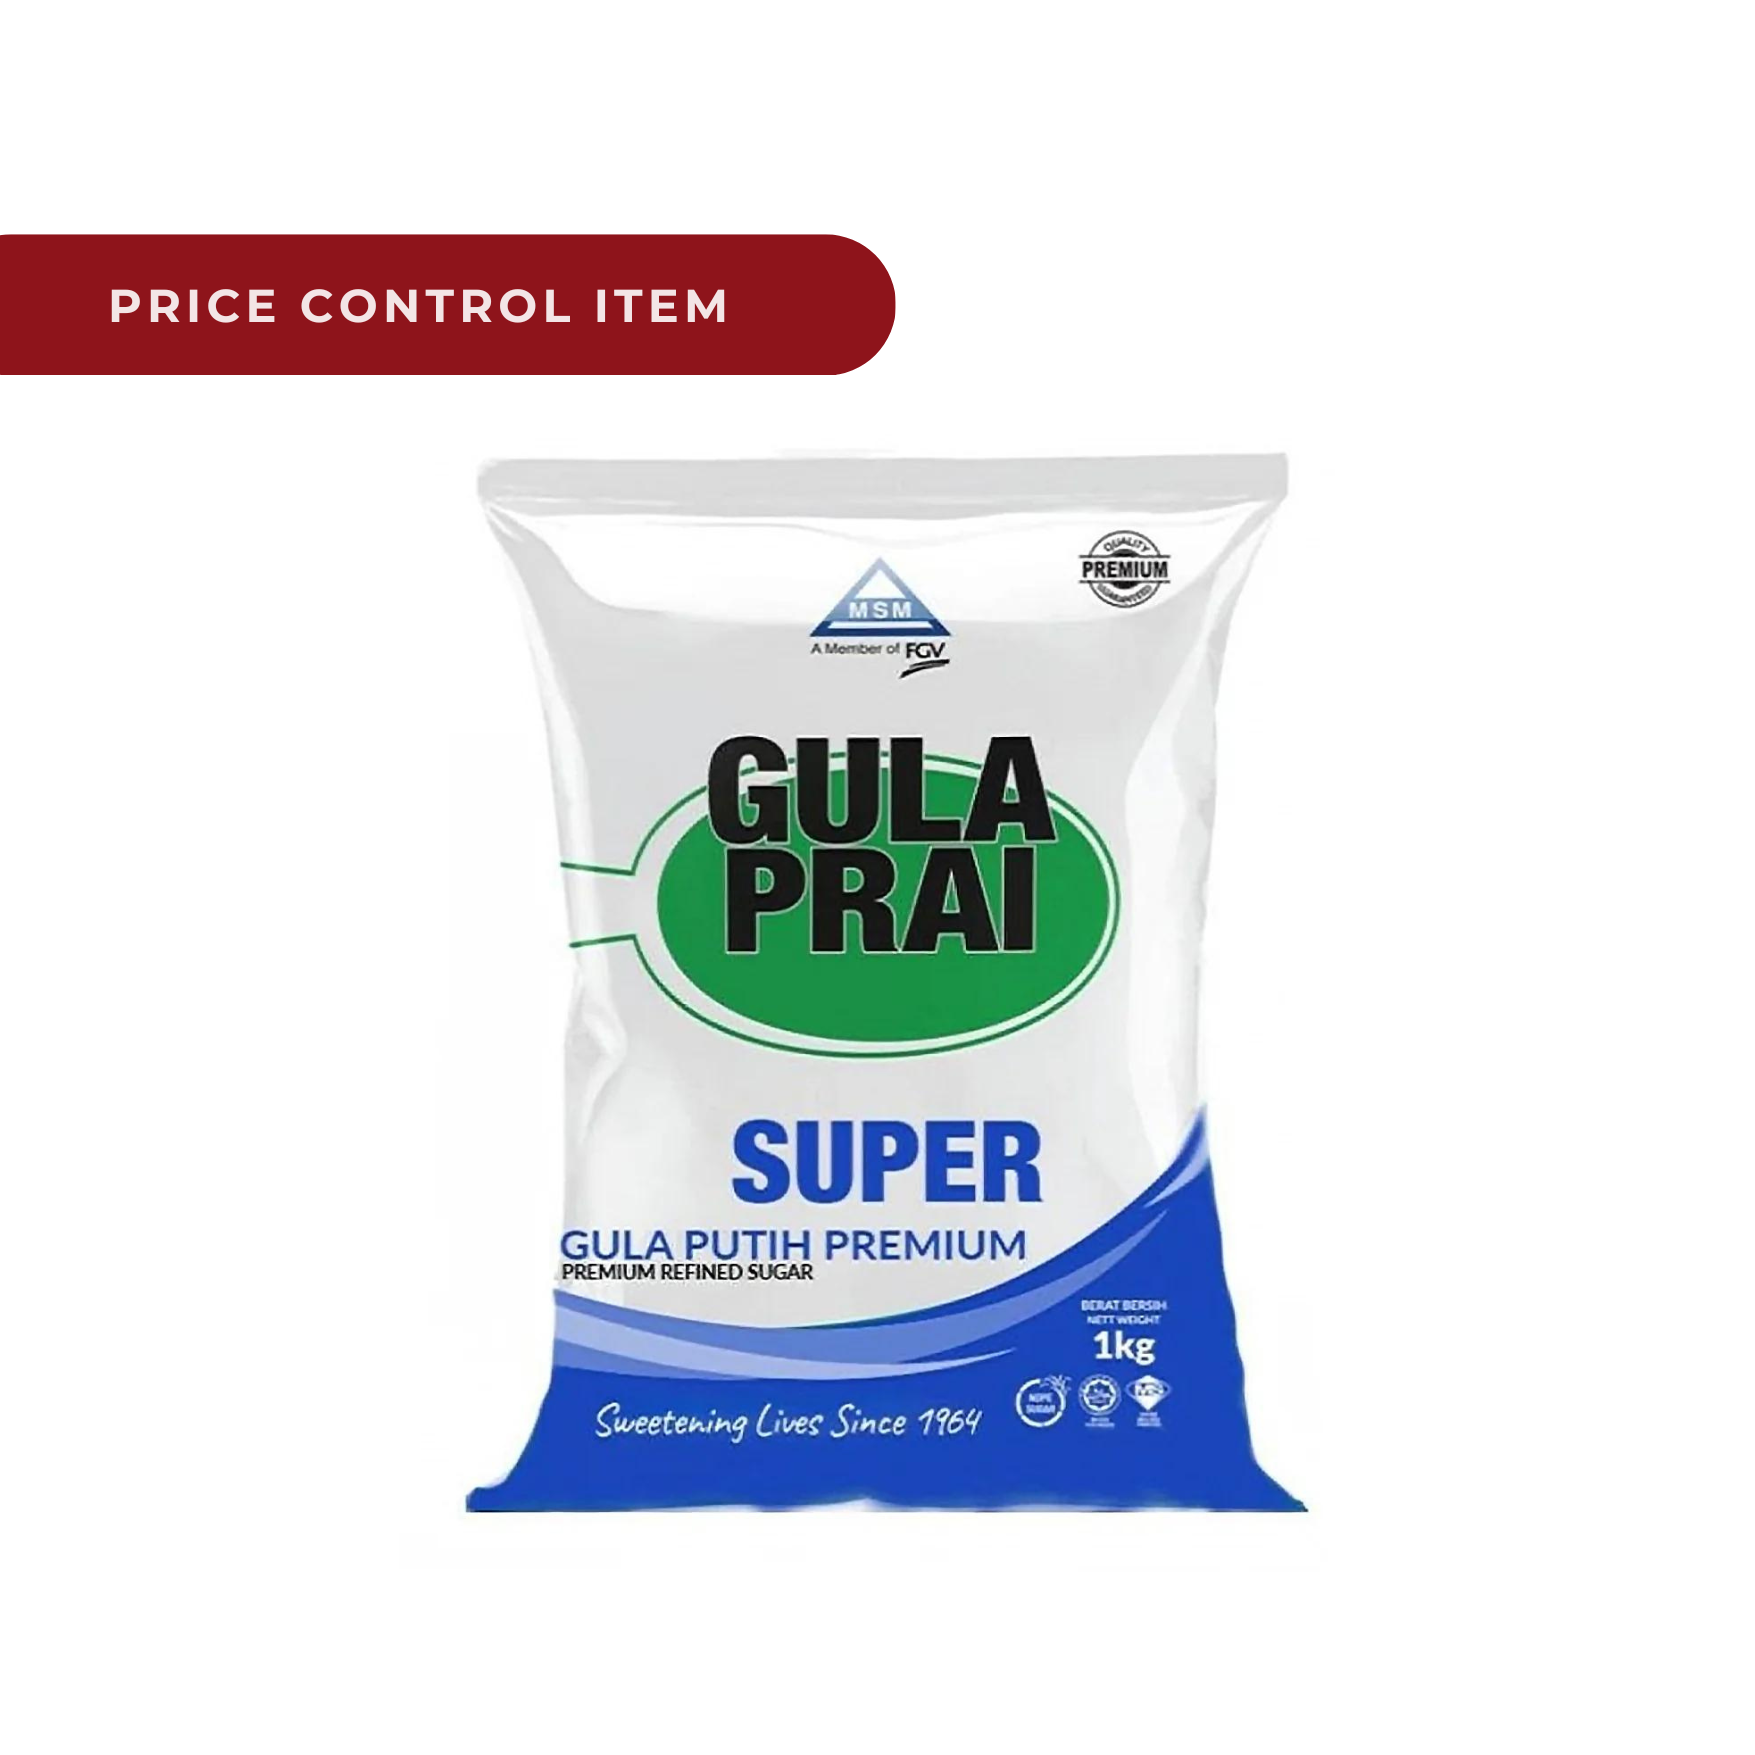 Gula Prai - Super Premium Refined Sugar 